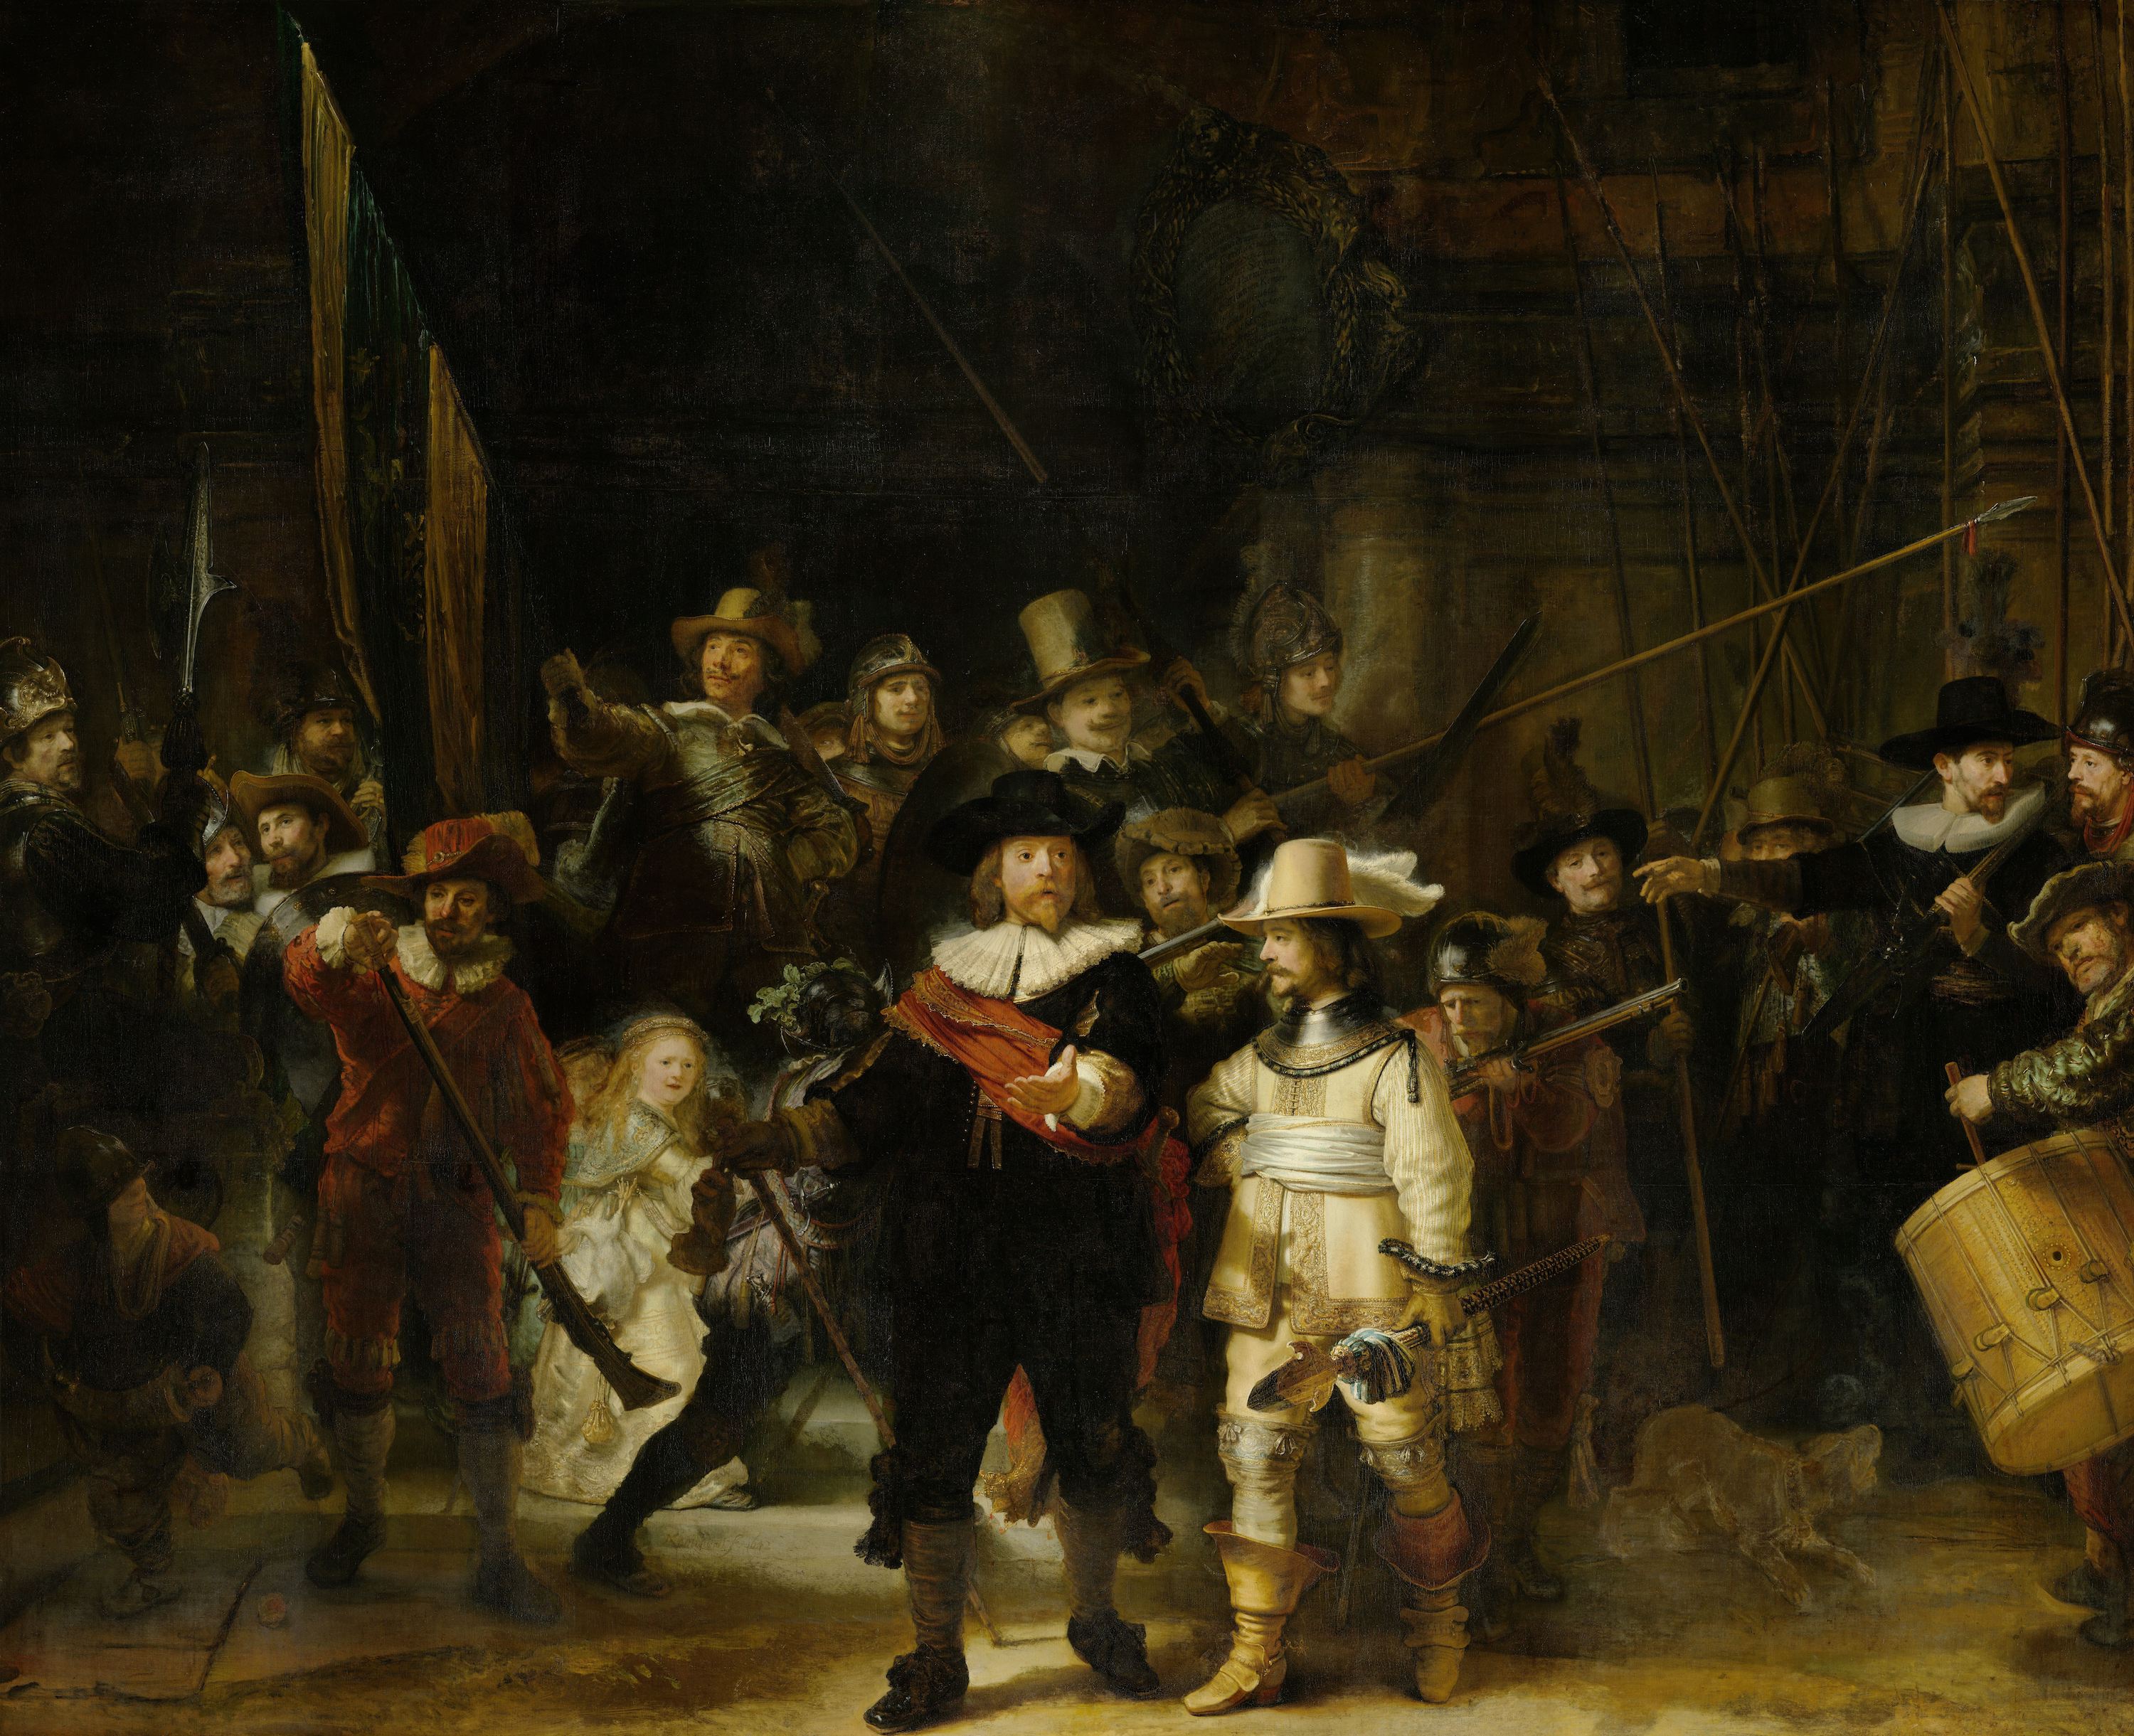 The Night Watch by Rembrandt van Rijn - 1642 - 363 × 437 cm Rijksmuseum